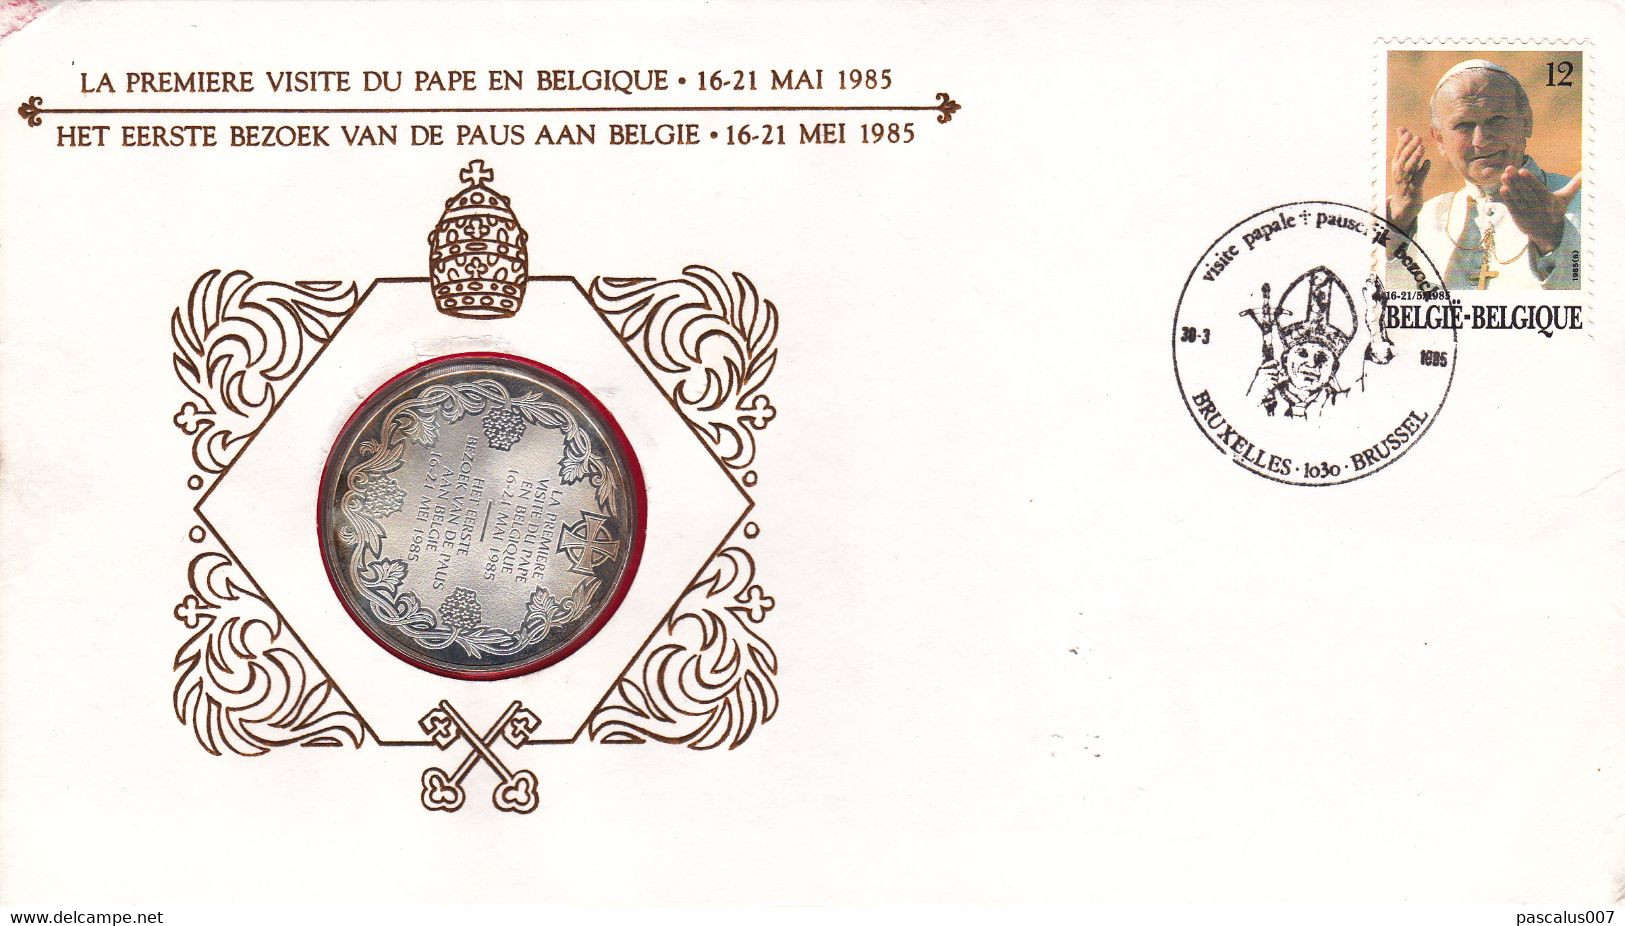 B01-412 Numisletter Pièce argent de 30gr FDC 1ère visite Papale Pape Jean-Paul II 30-03-1985 Bruxelles 1030 Brussel